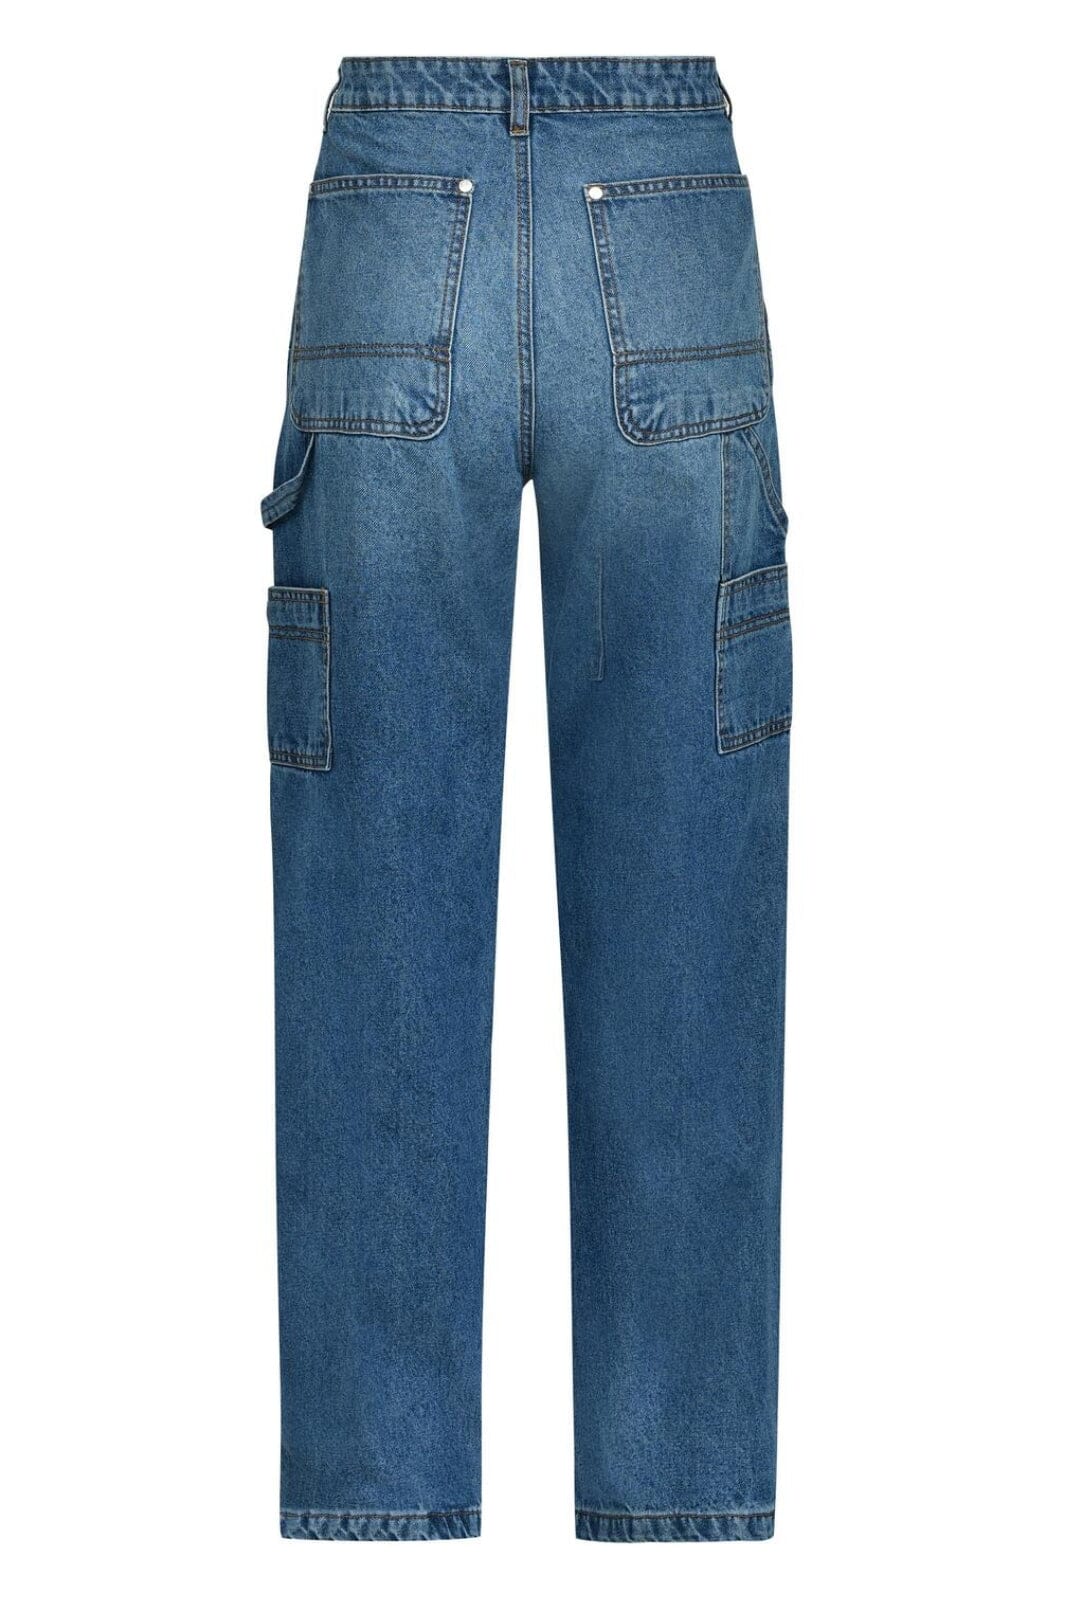 Sofie Schnoor - S234265 Jeans - Dark Denim Blue Jeans 